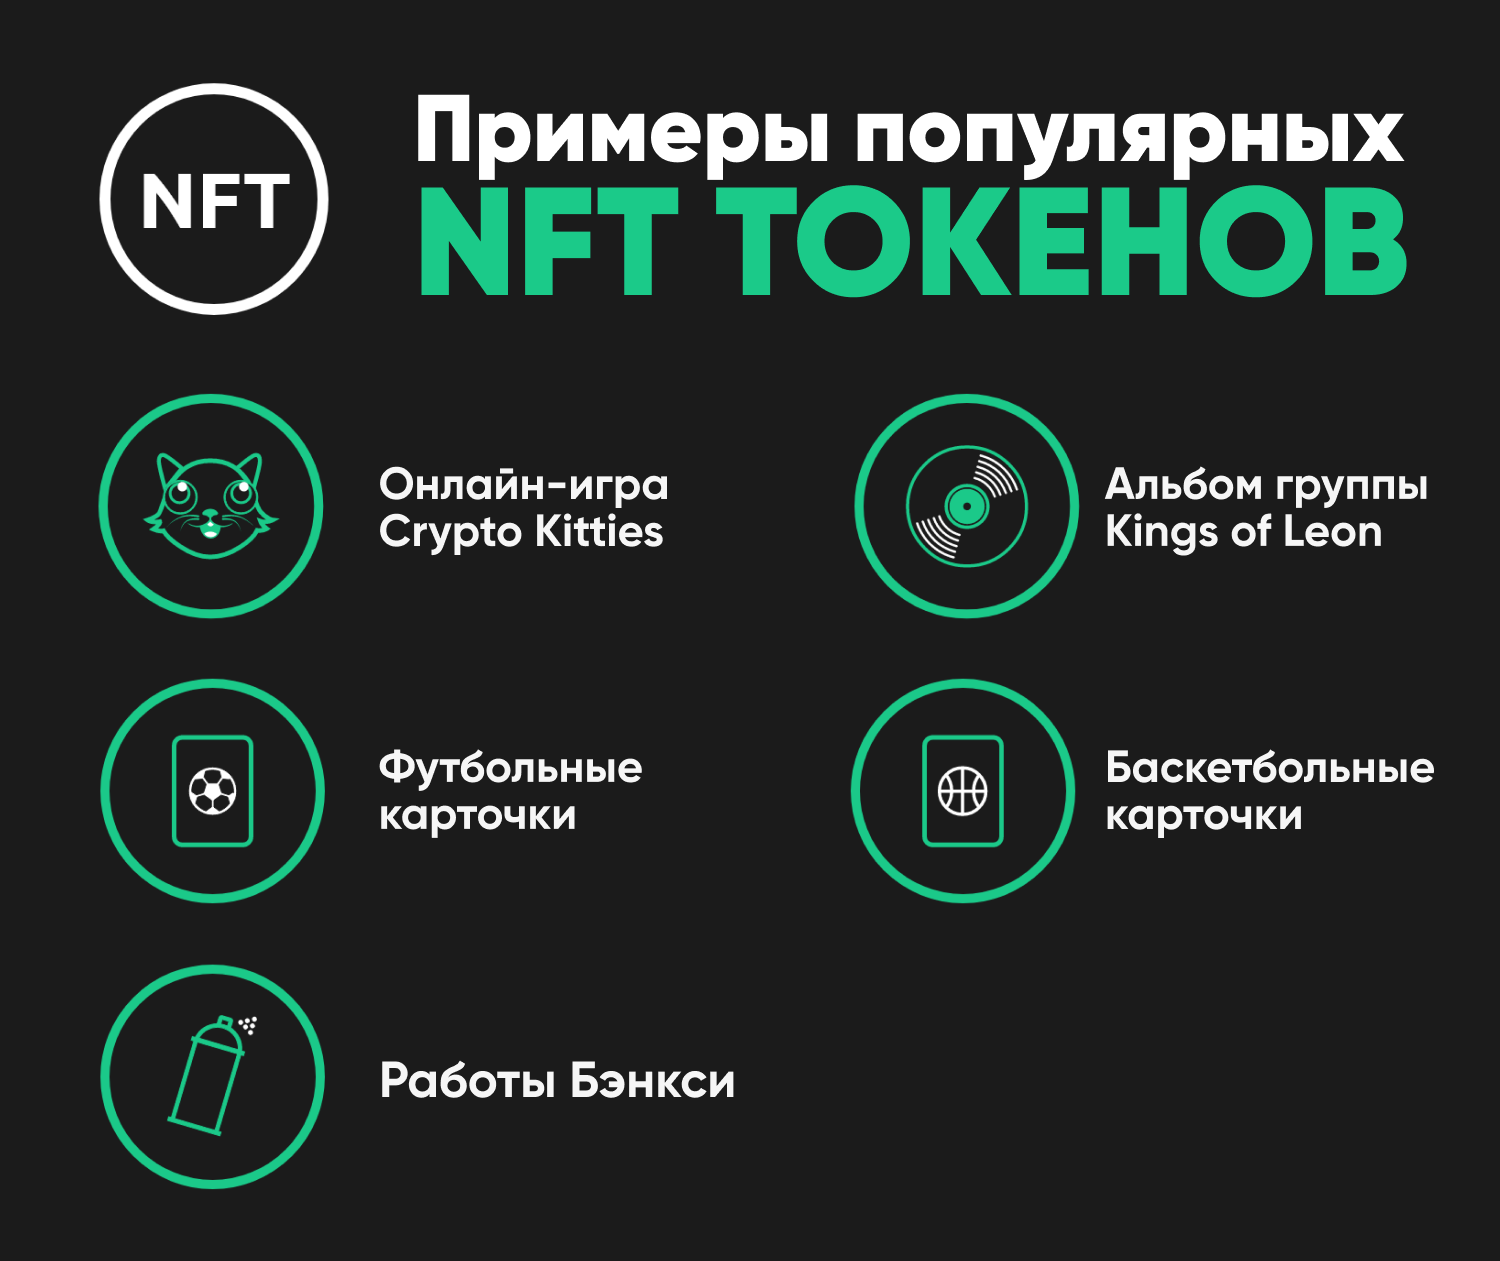 Nft как работает. NFT токены. Невзаимозаменяемых токенов (NFT). NFT крипто. NFT-токен (невзаимозаменяемый токен).